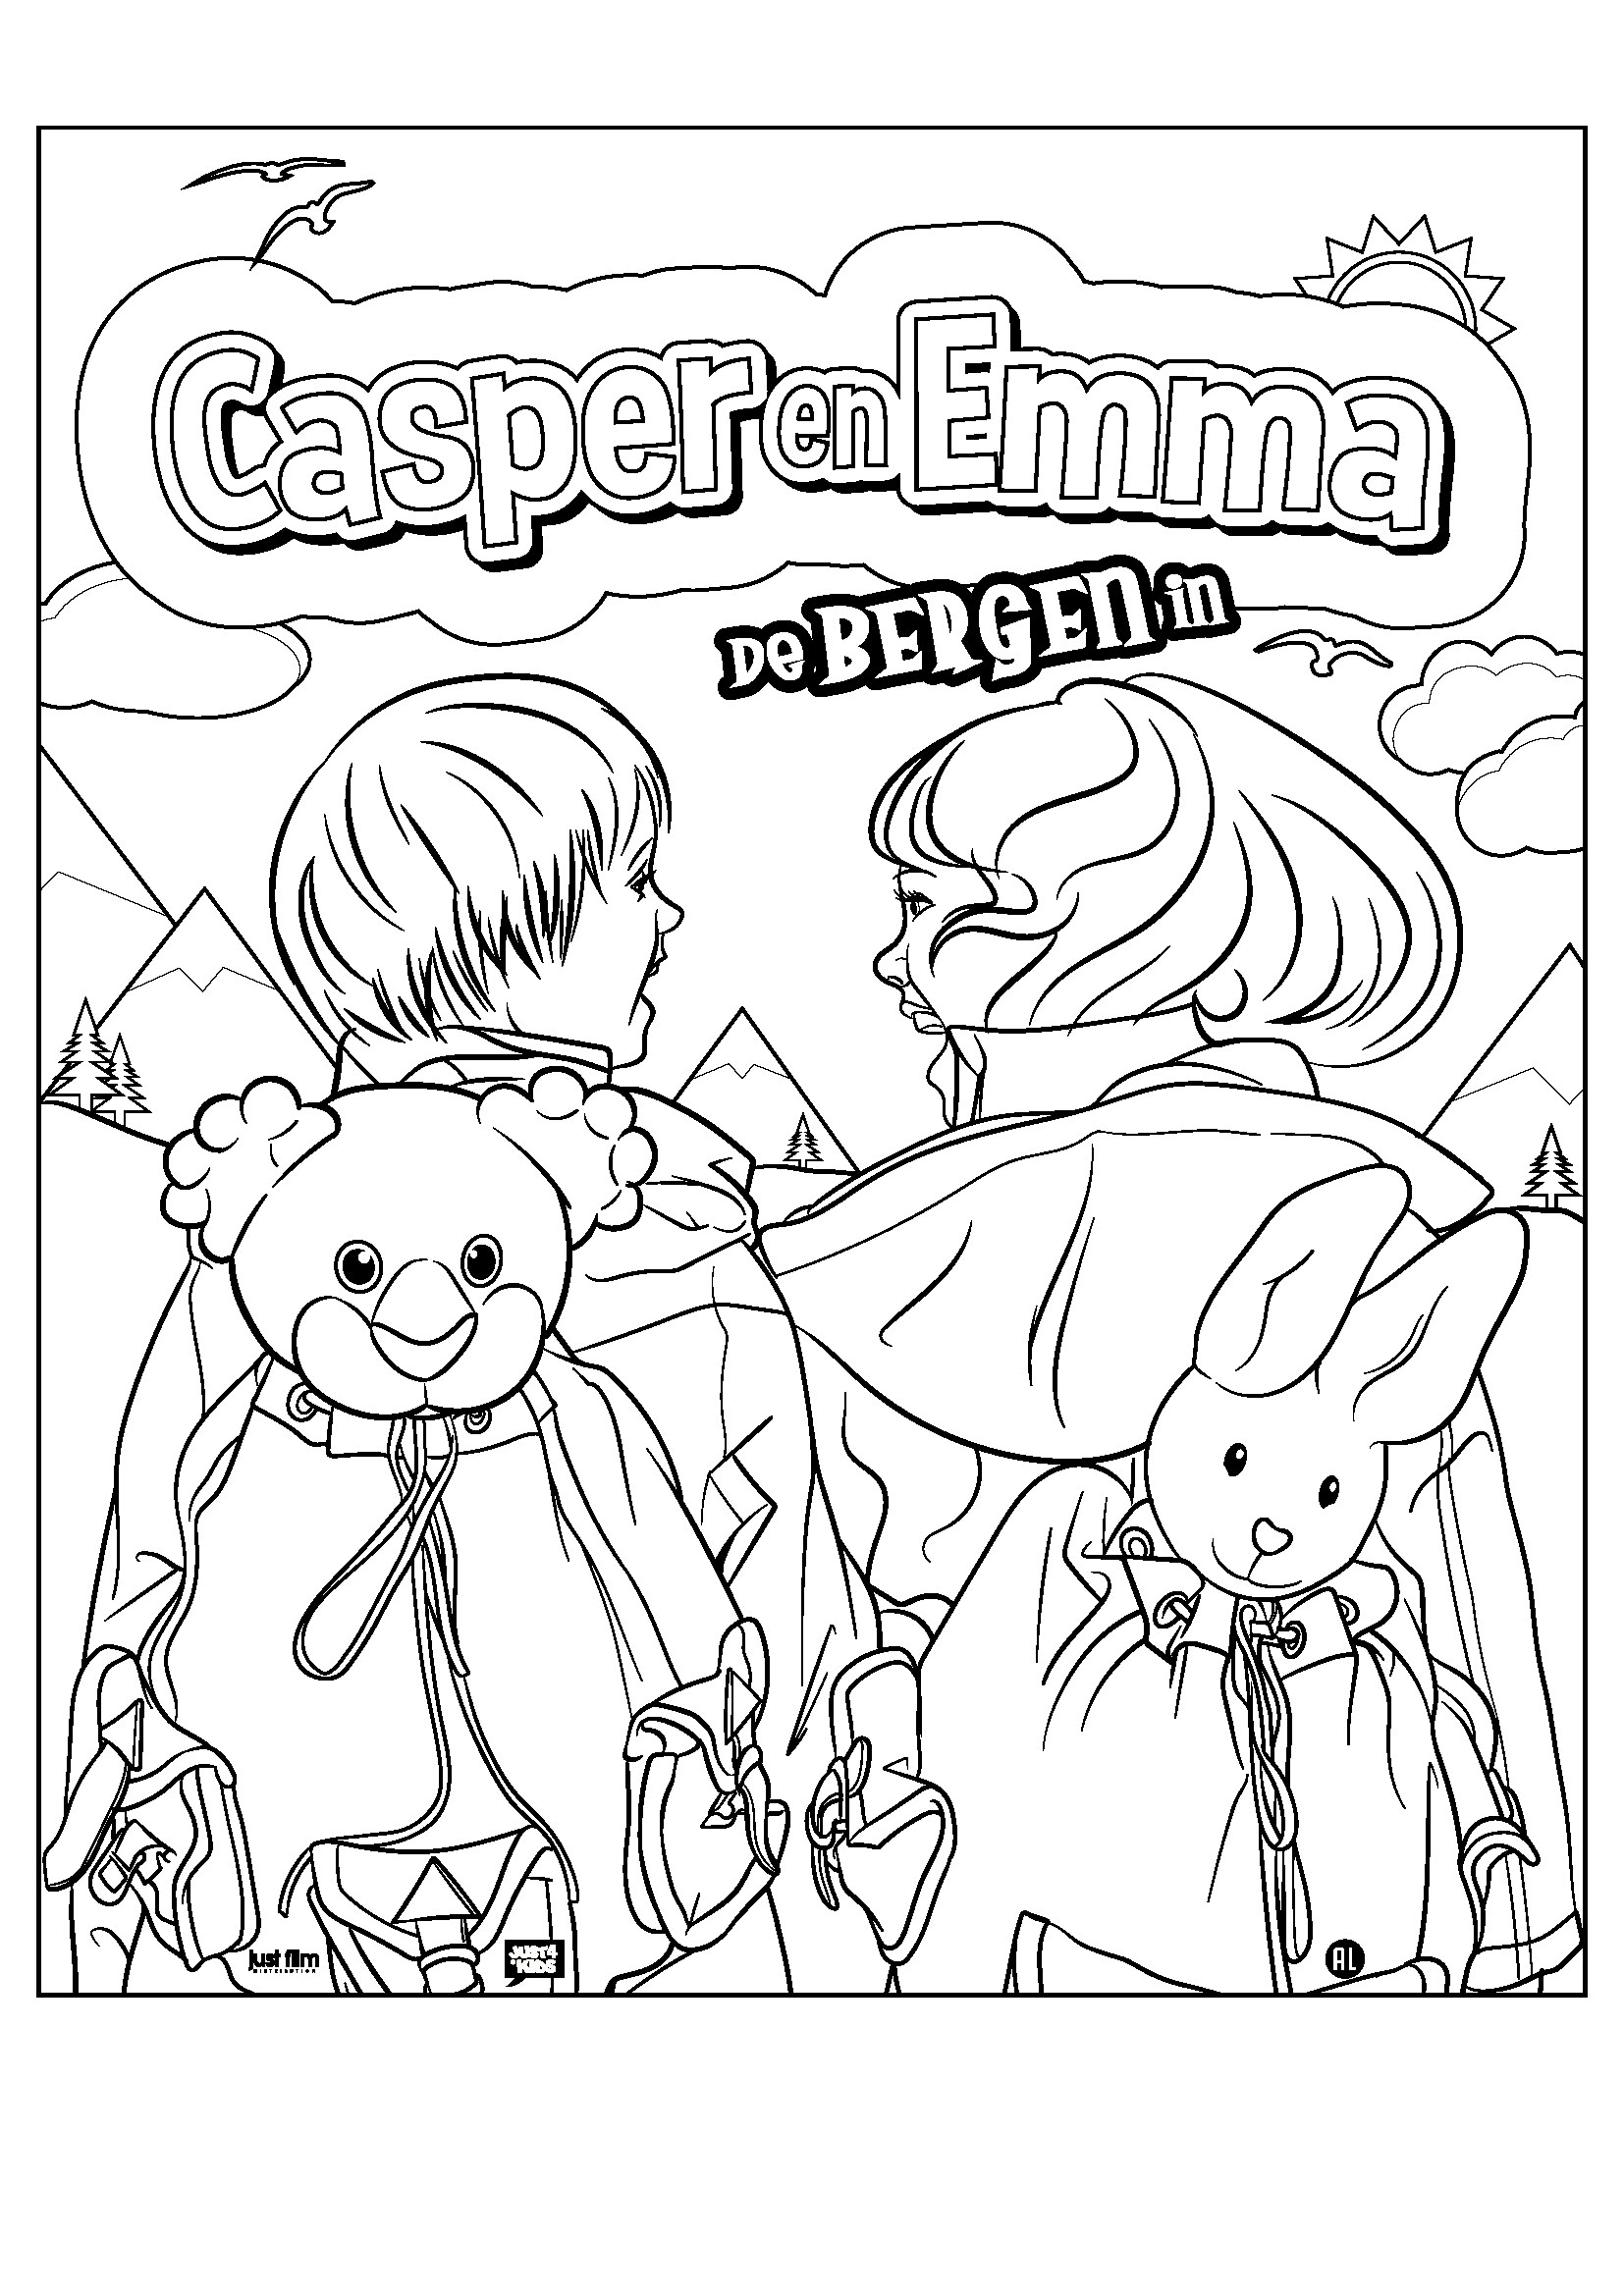 Casper & Emma De Bergen in